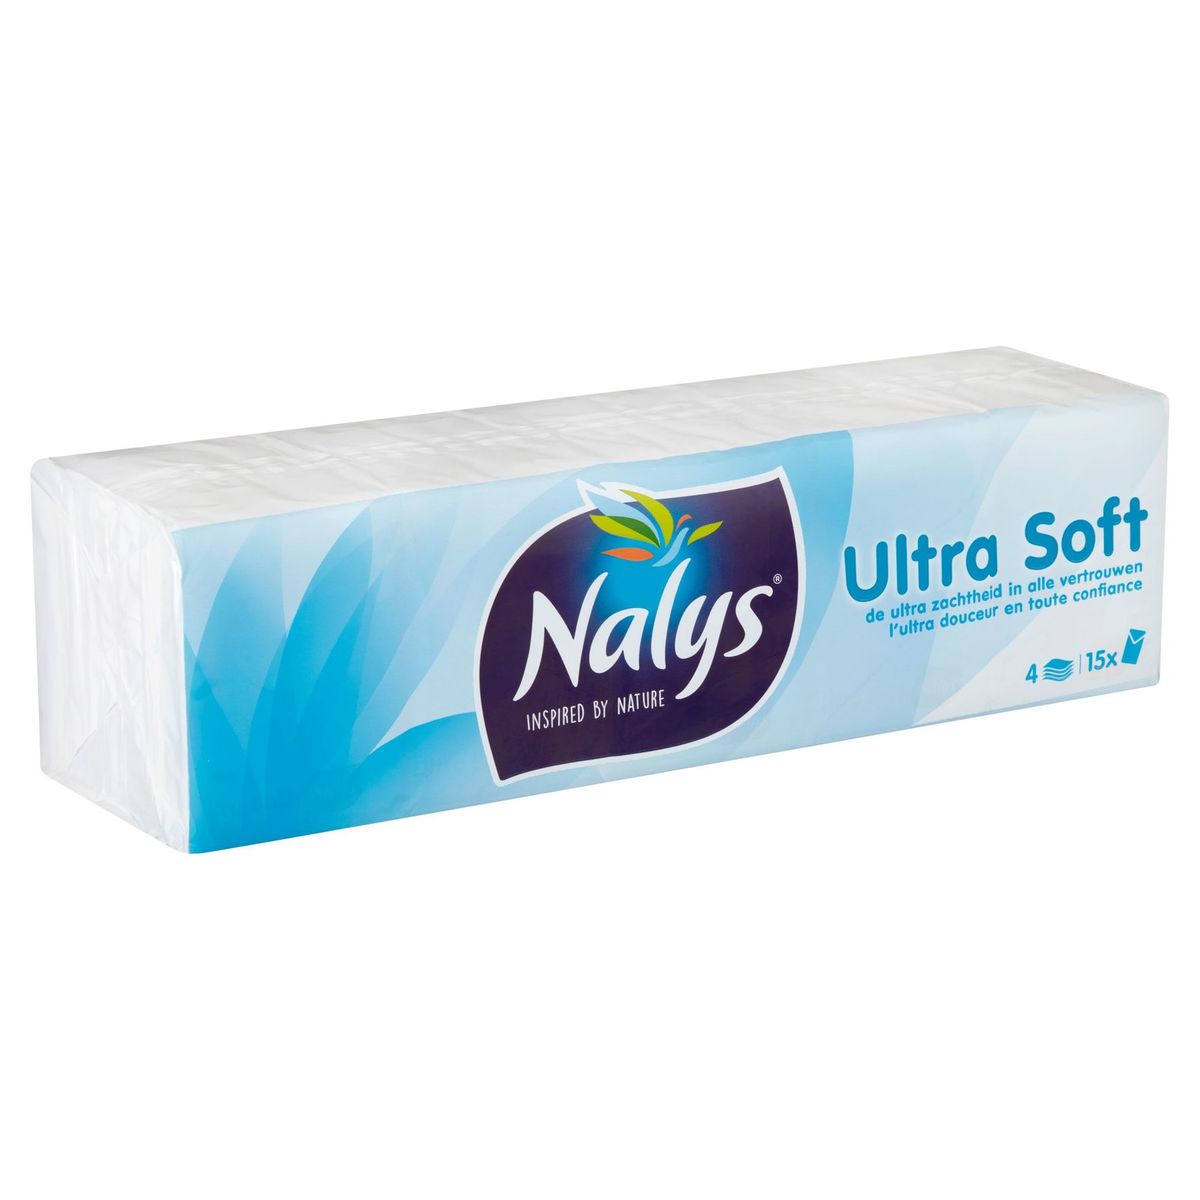 Nalys Ultra Soft 4 Lagen 15 Stuks